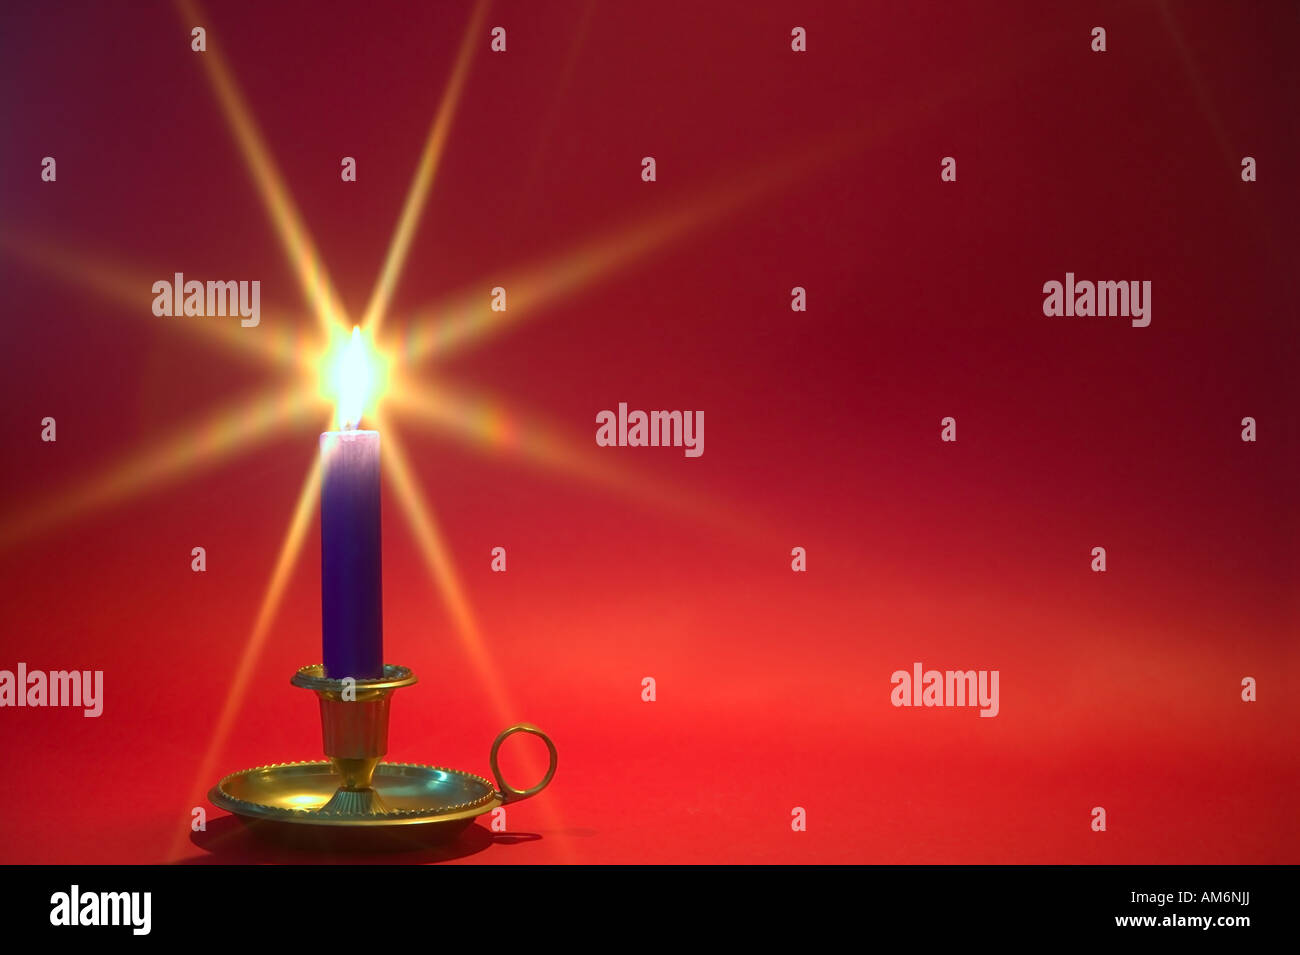 Eine blaue Kerze in einer Messing-Halterung gegen einen roten Hintergrund Weihnachtsthema Stockfoto